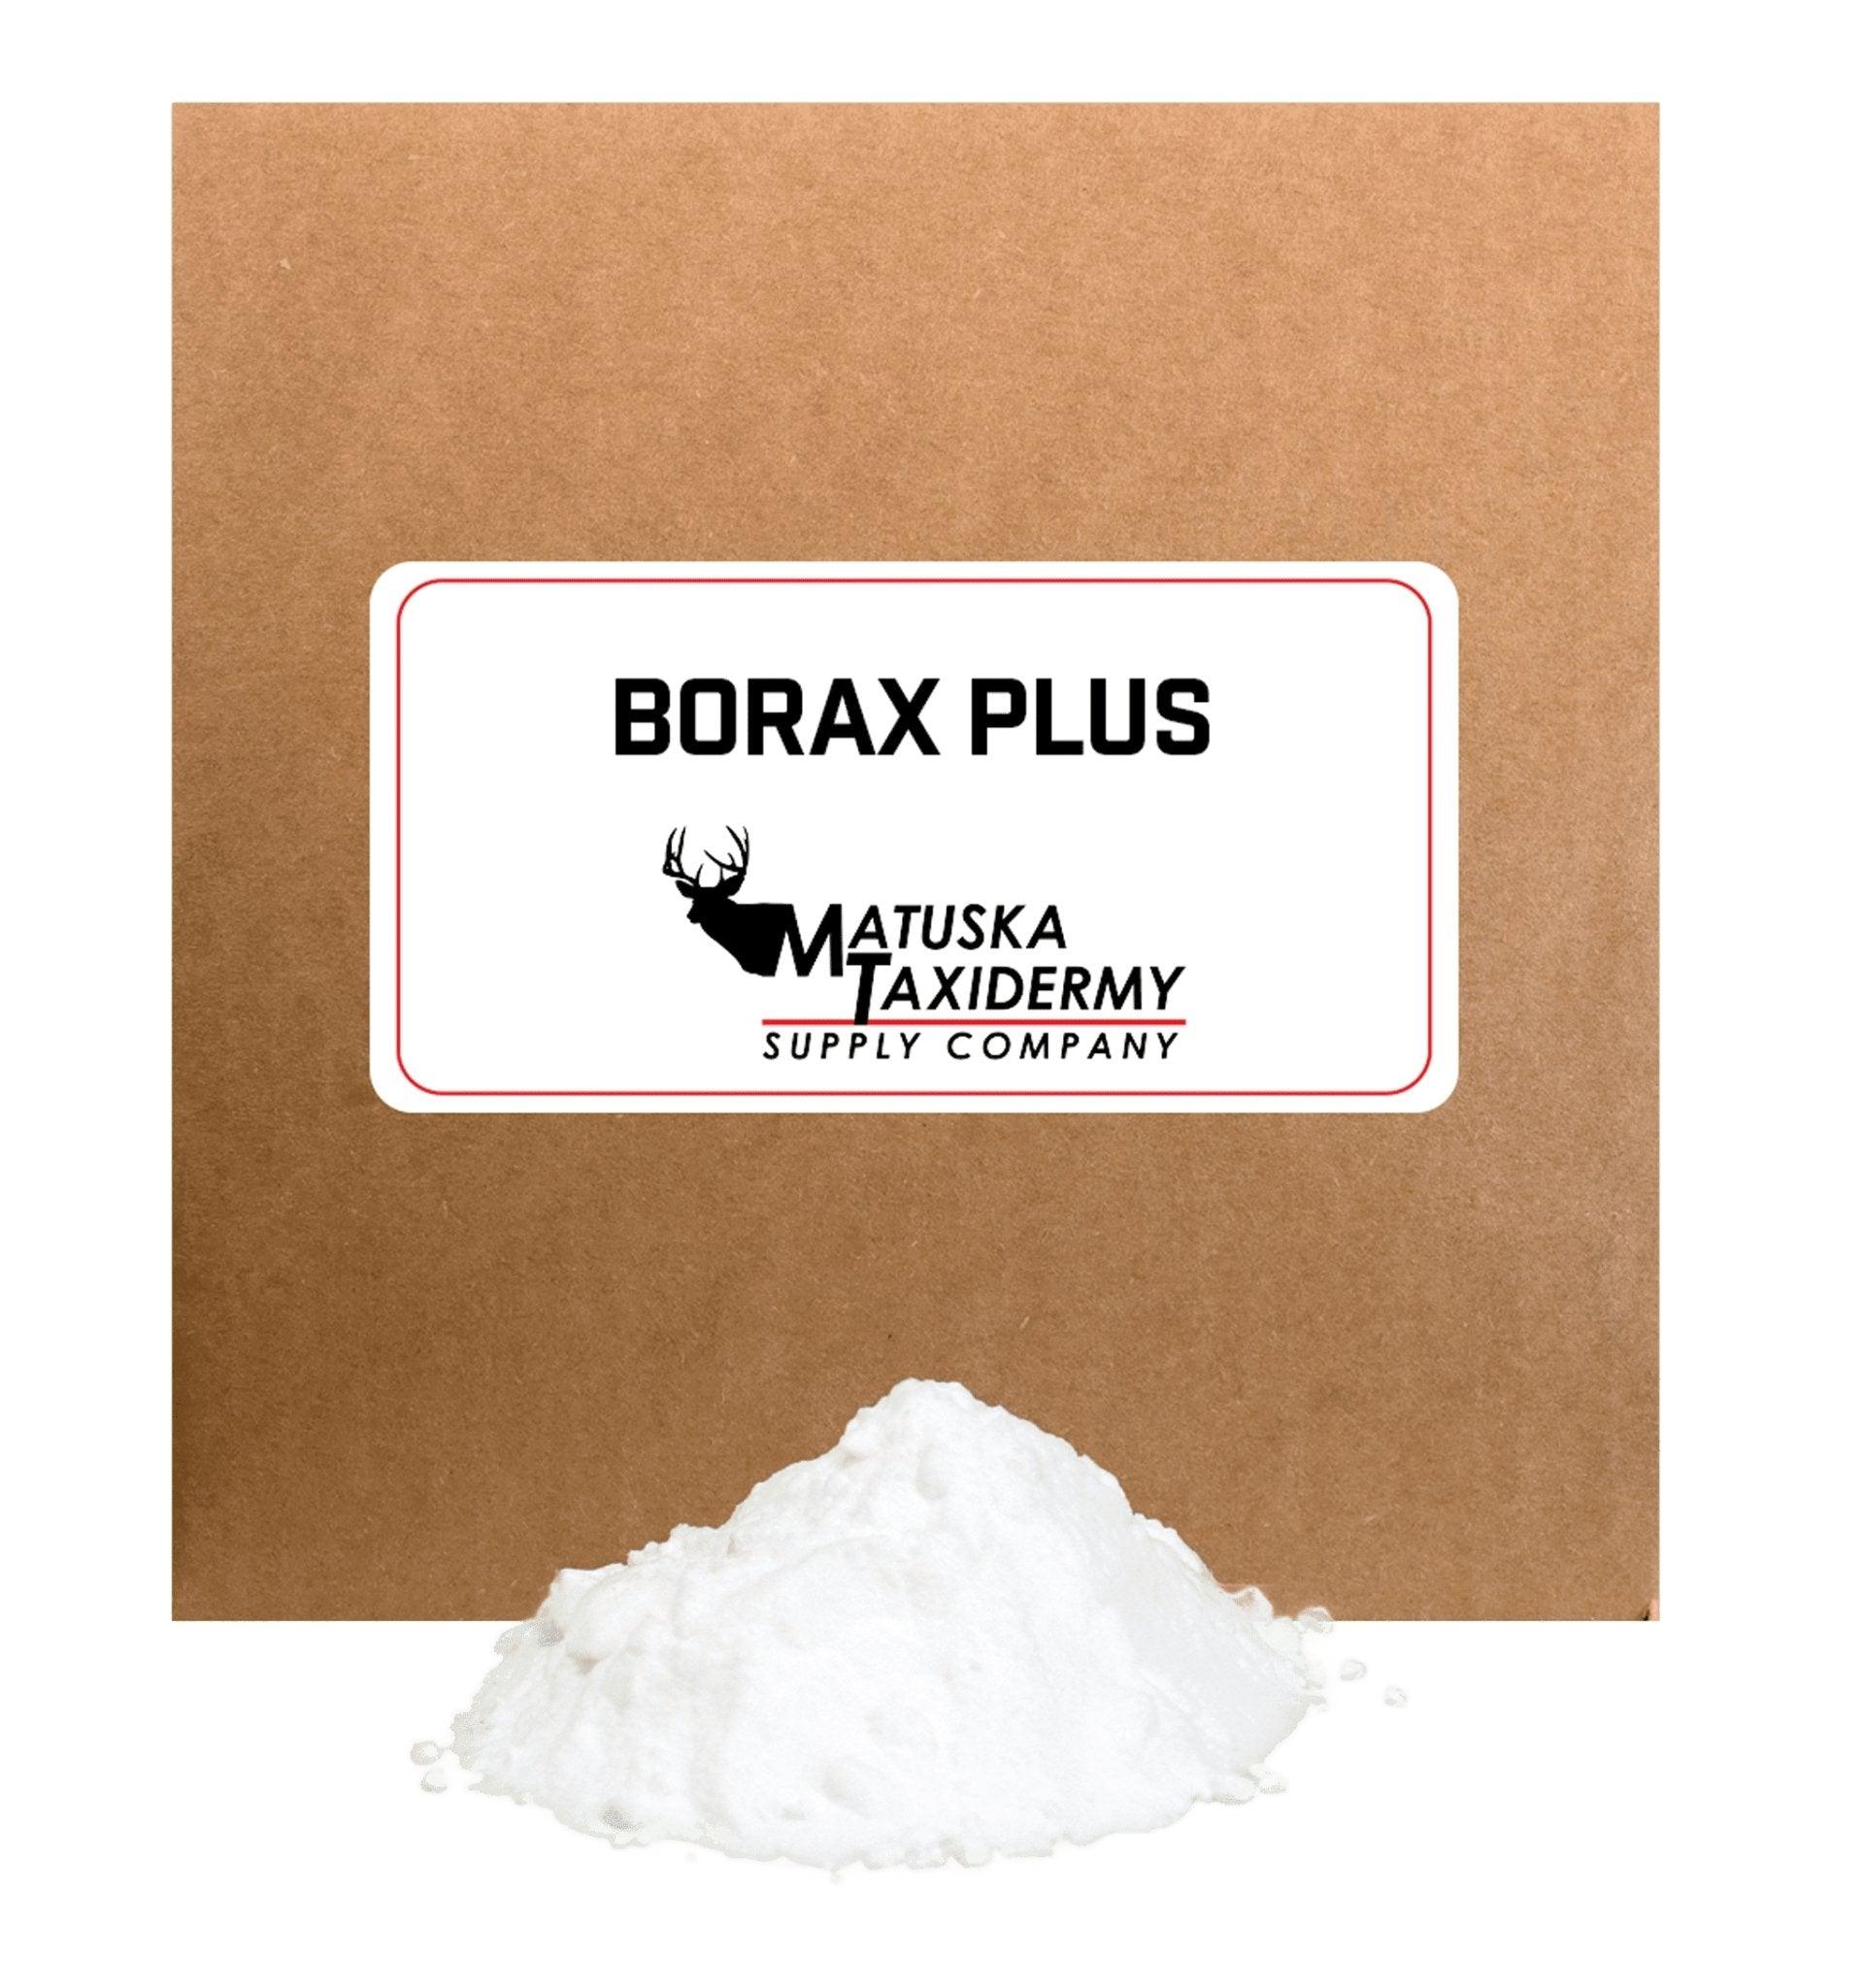 Borax Plus - Matuska Taxidermy Supply Company